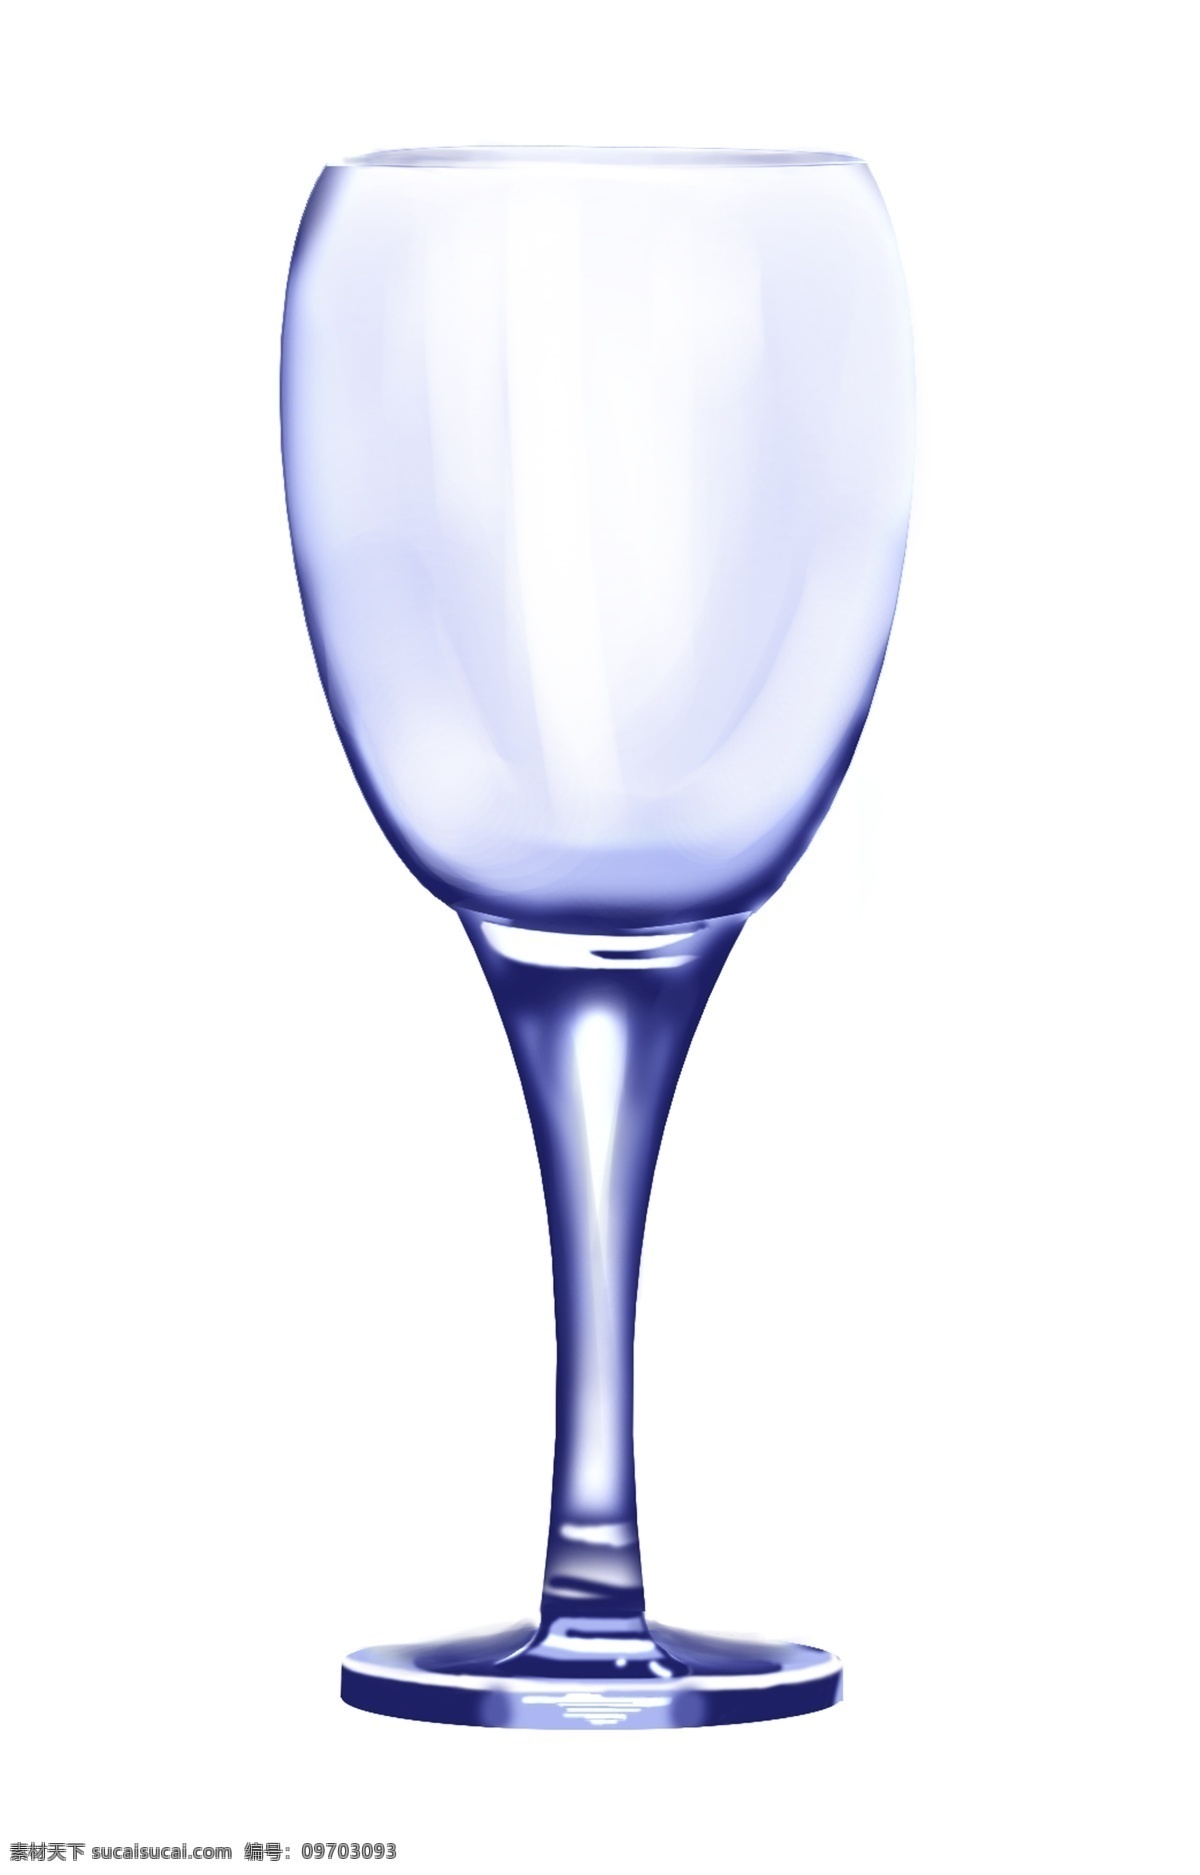 蓝色 玻璃 容器 插画 蓝色酒杯 蓝色装饰 玻璃瓶子 两个玻璃瓶子 玻璃容器 透明玻璃瓶子